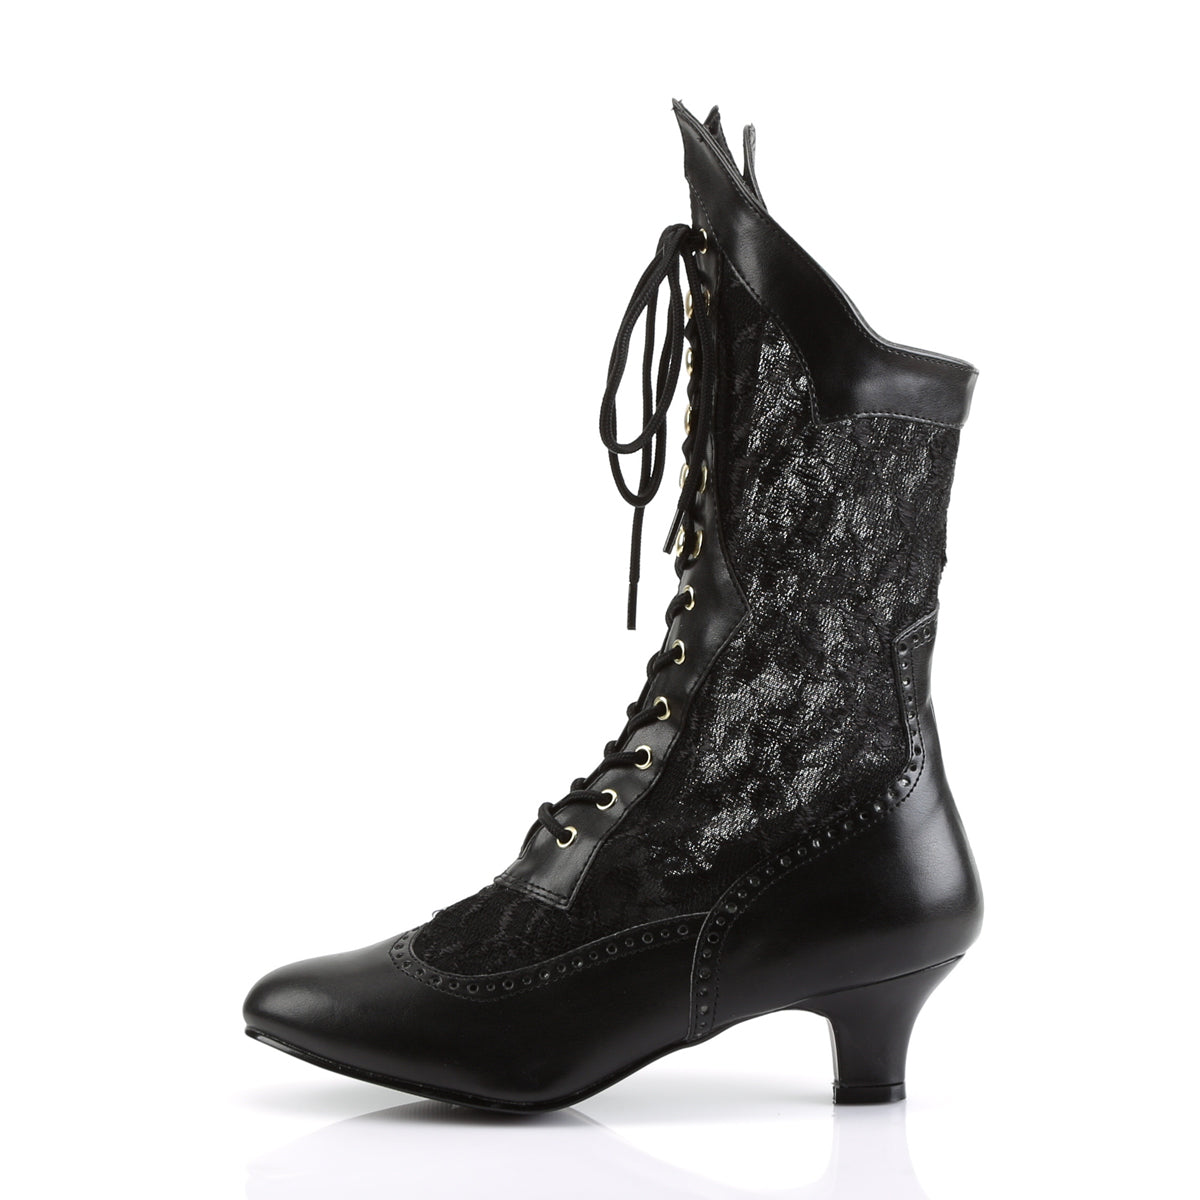 DAME-115 Funtasma Fantasy Black Pu-Lace Women's Boots [Fancy Dress Footwear]